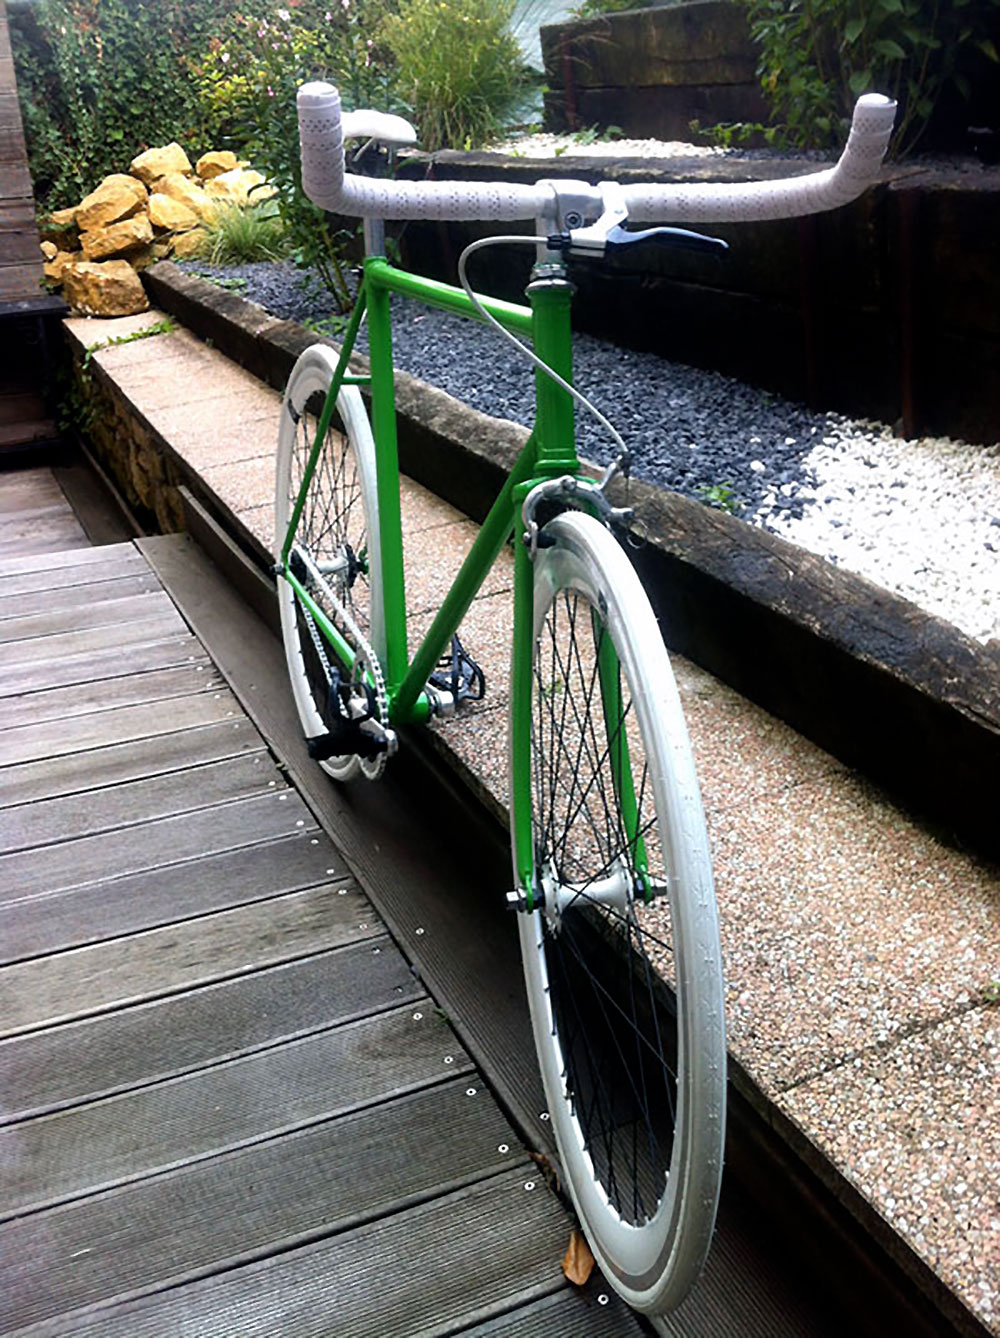 Singlespeed vert sur base d'un vélo de course Gitane